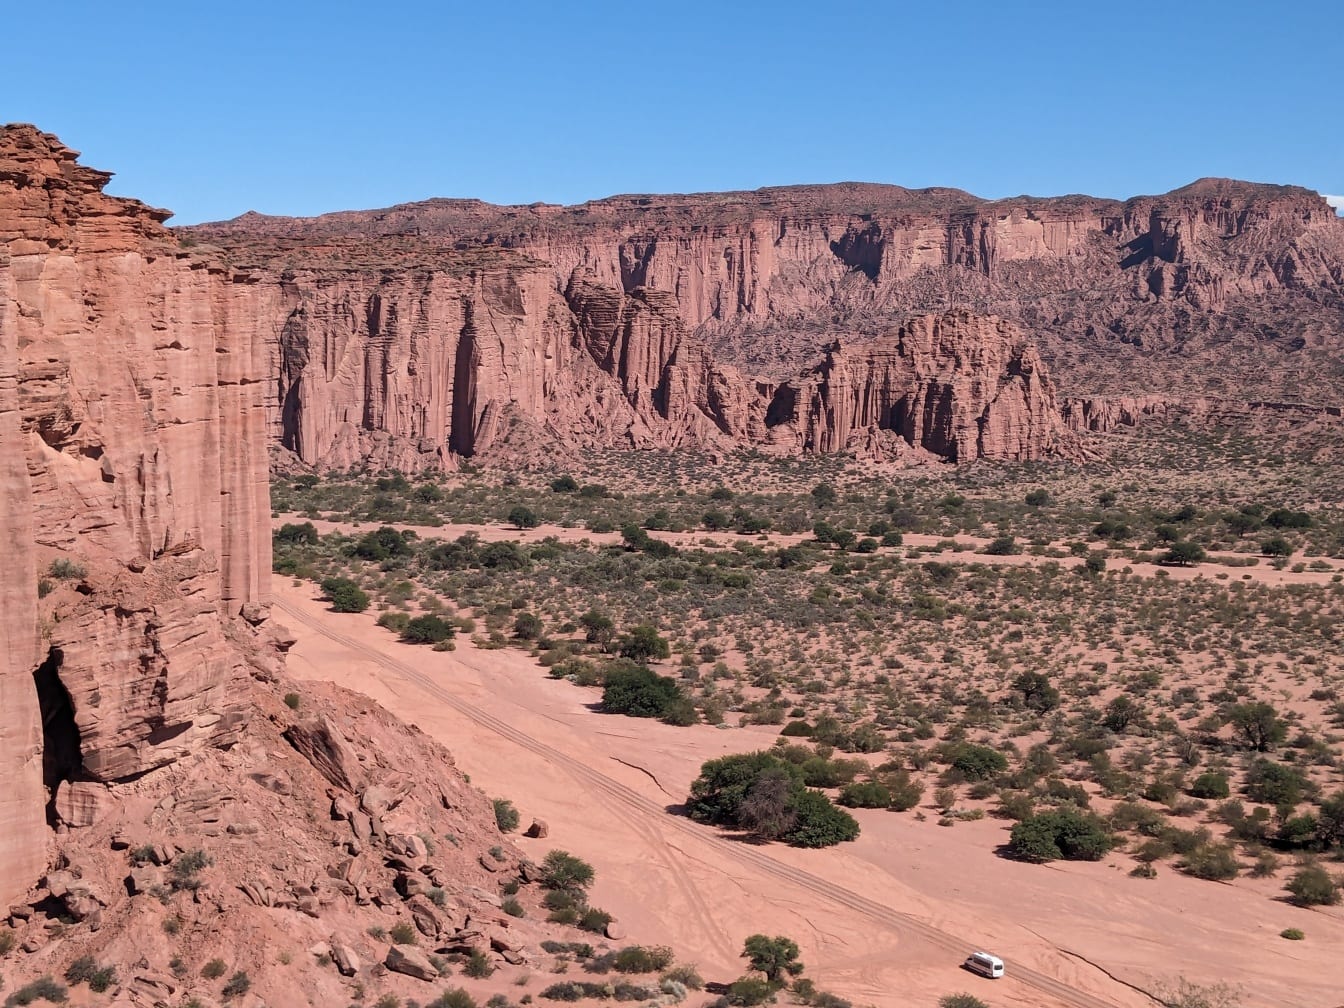 Une vue aérienne d’un paysage désertique avec une route poussiéreuse et de grandes falaises au loin